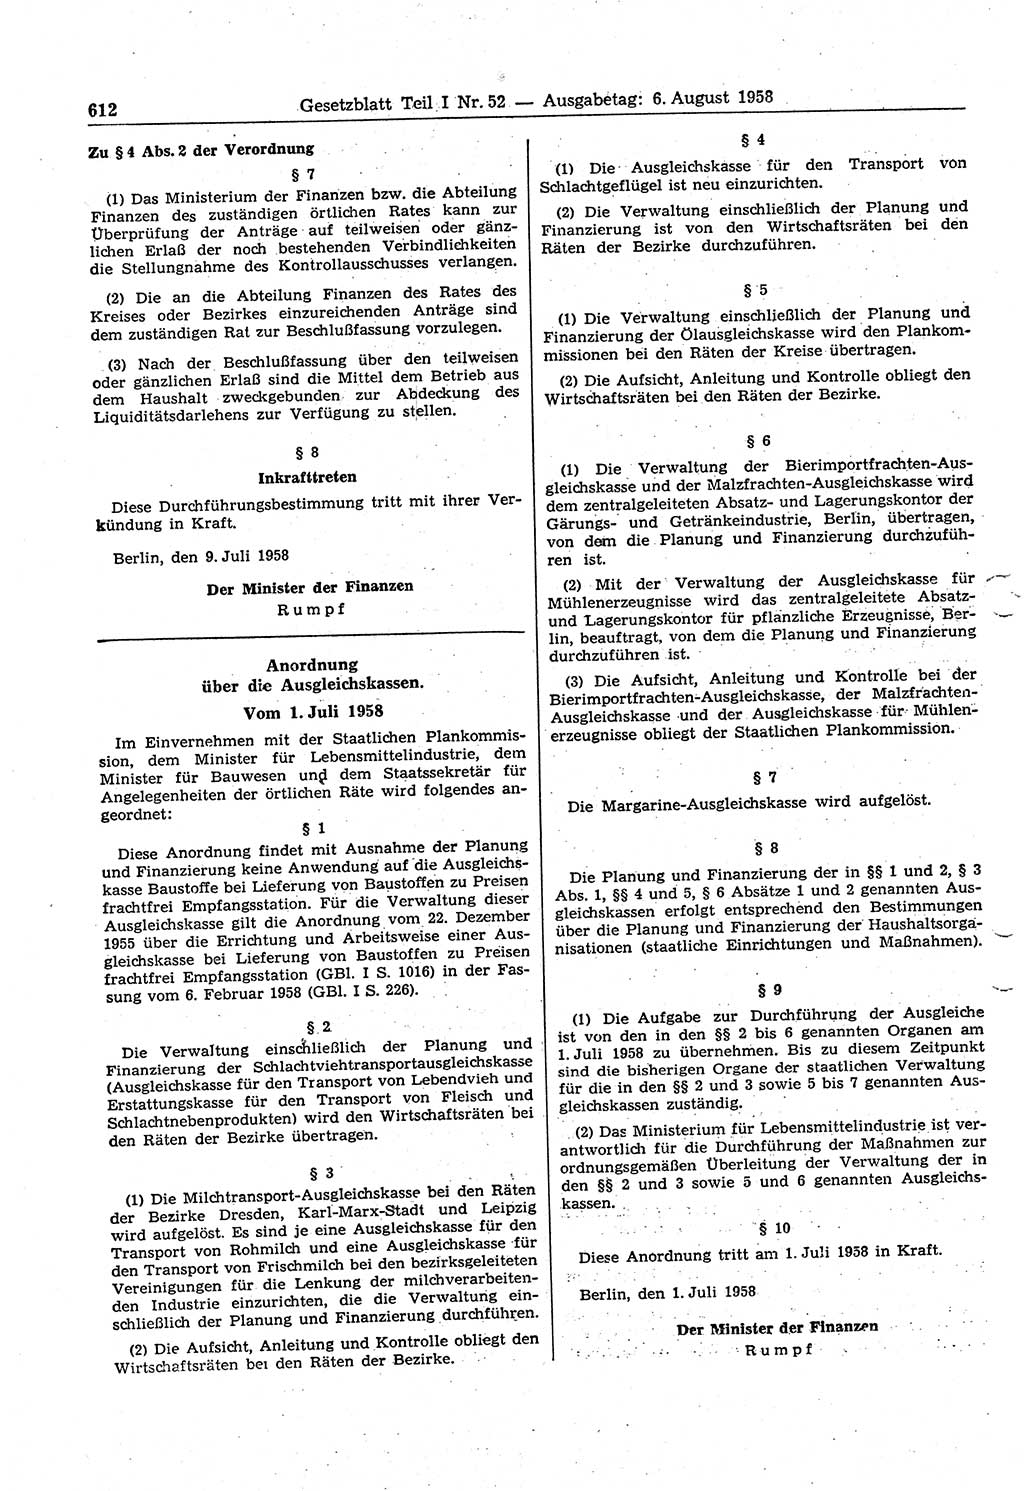 Gesetzblatt (GBl.) der Deutschen Demokratischen Republik (DDR) Teil Ⅰ 1958, Seite 612 (GBl. DDR Ⅰ 1958, S. 612)